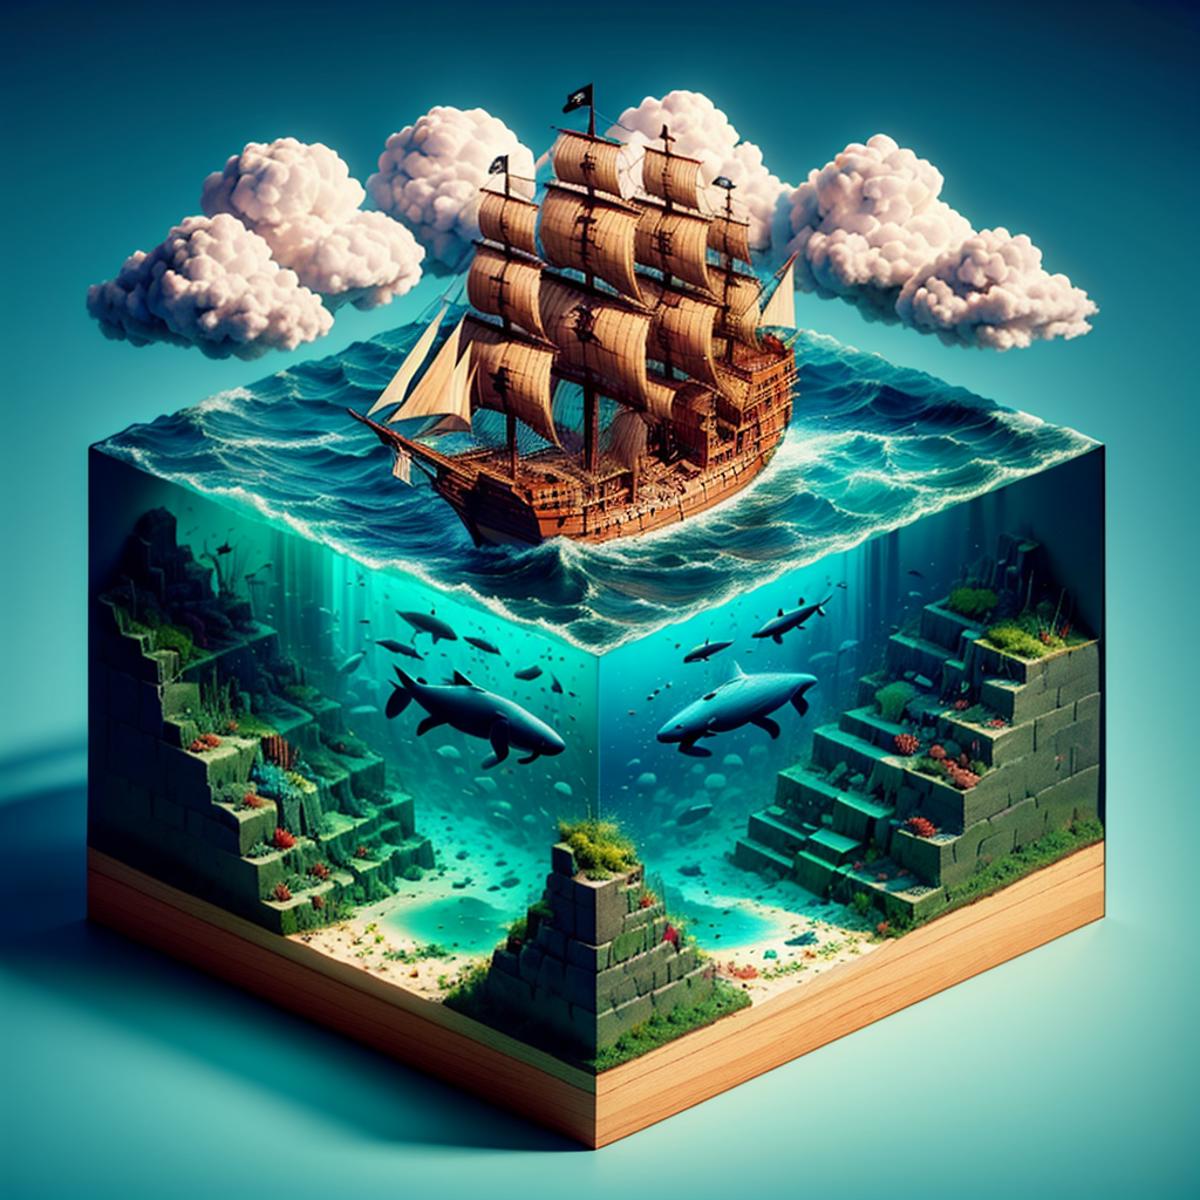 Water Cube image by norfleetzzc